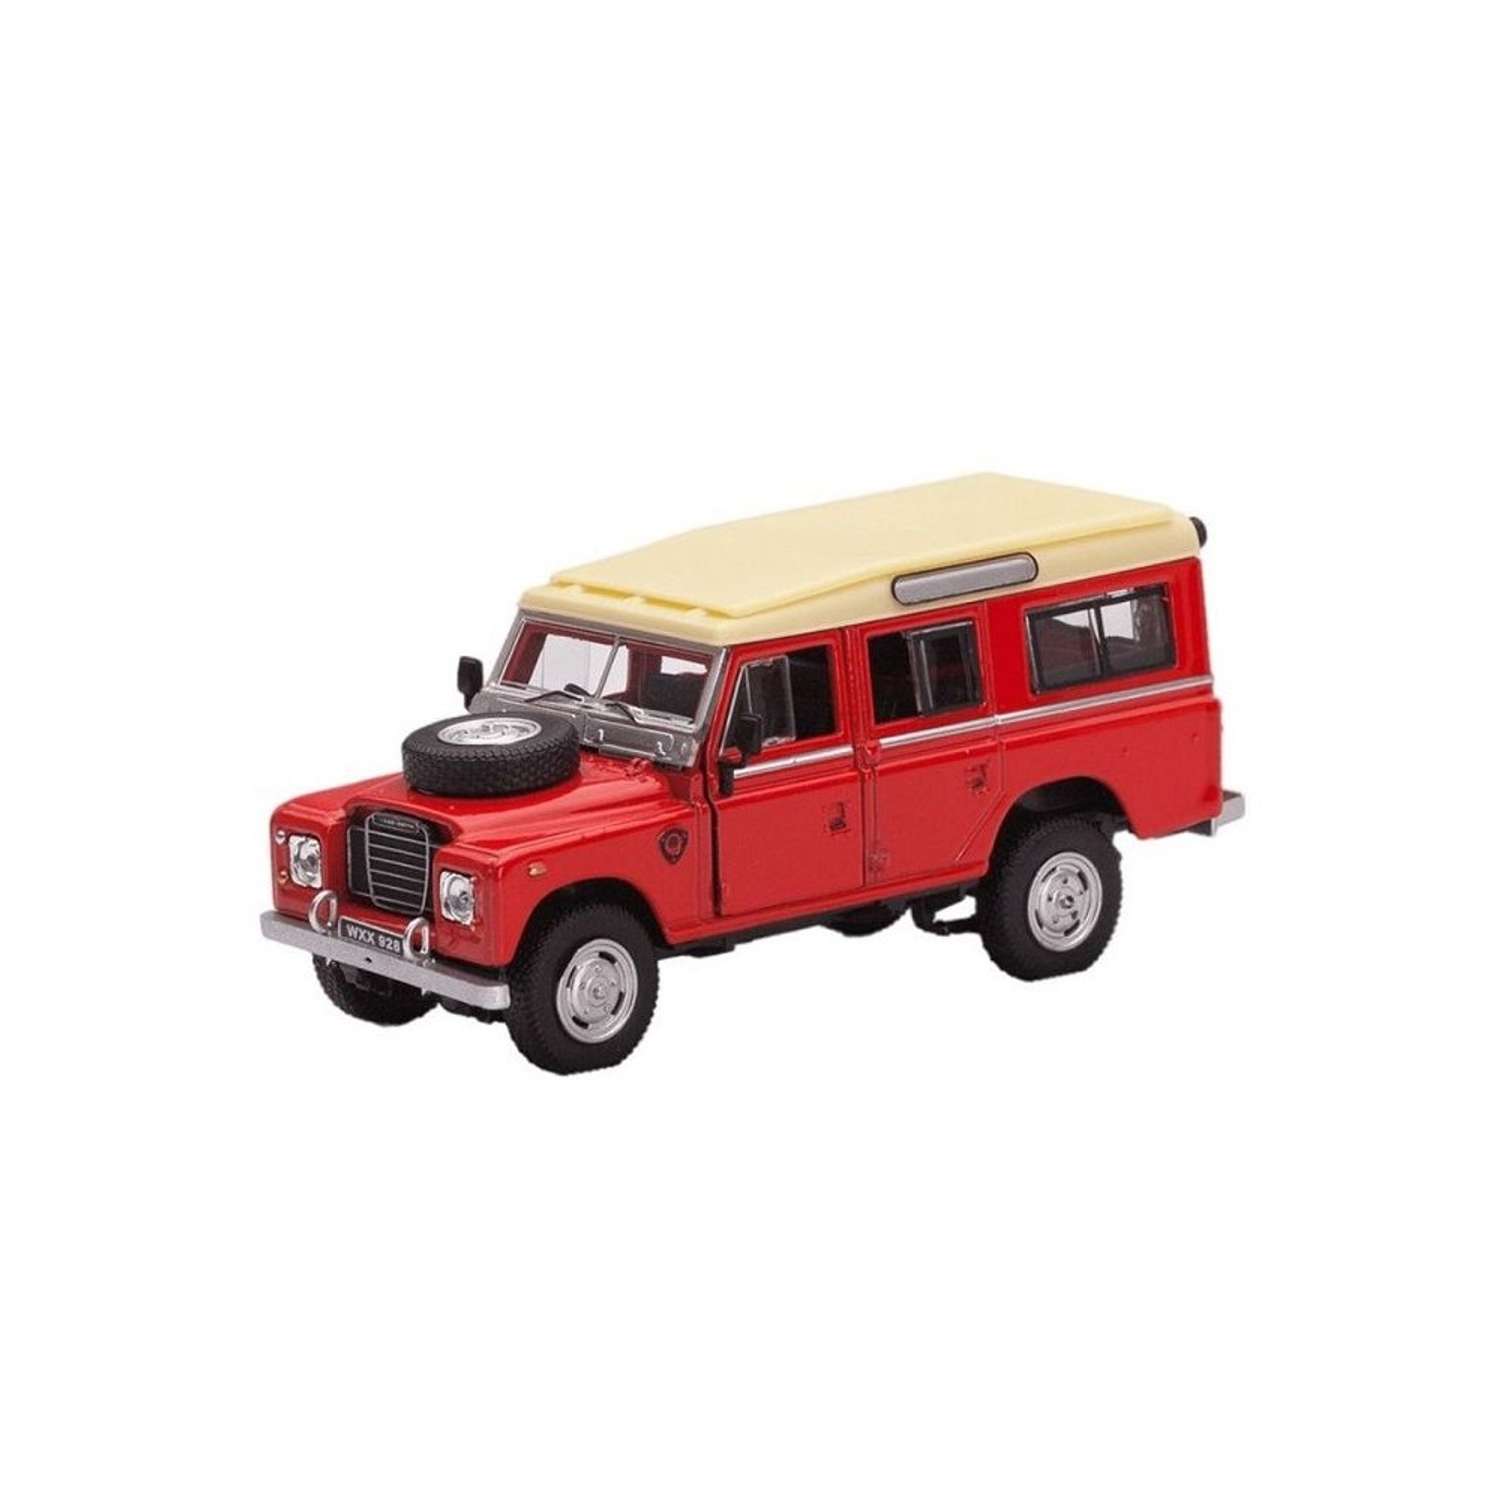 Мини-модель 1:43 CARARAMA Land Rover Series 109 металлическая красная 7868 - фото 1